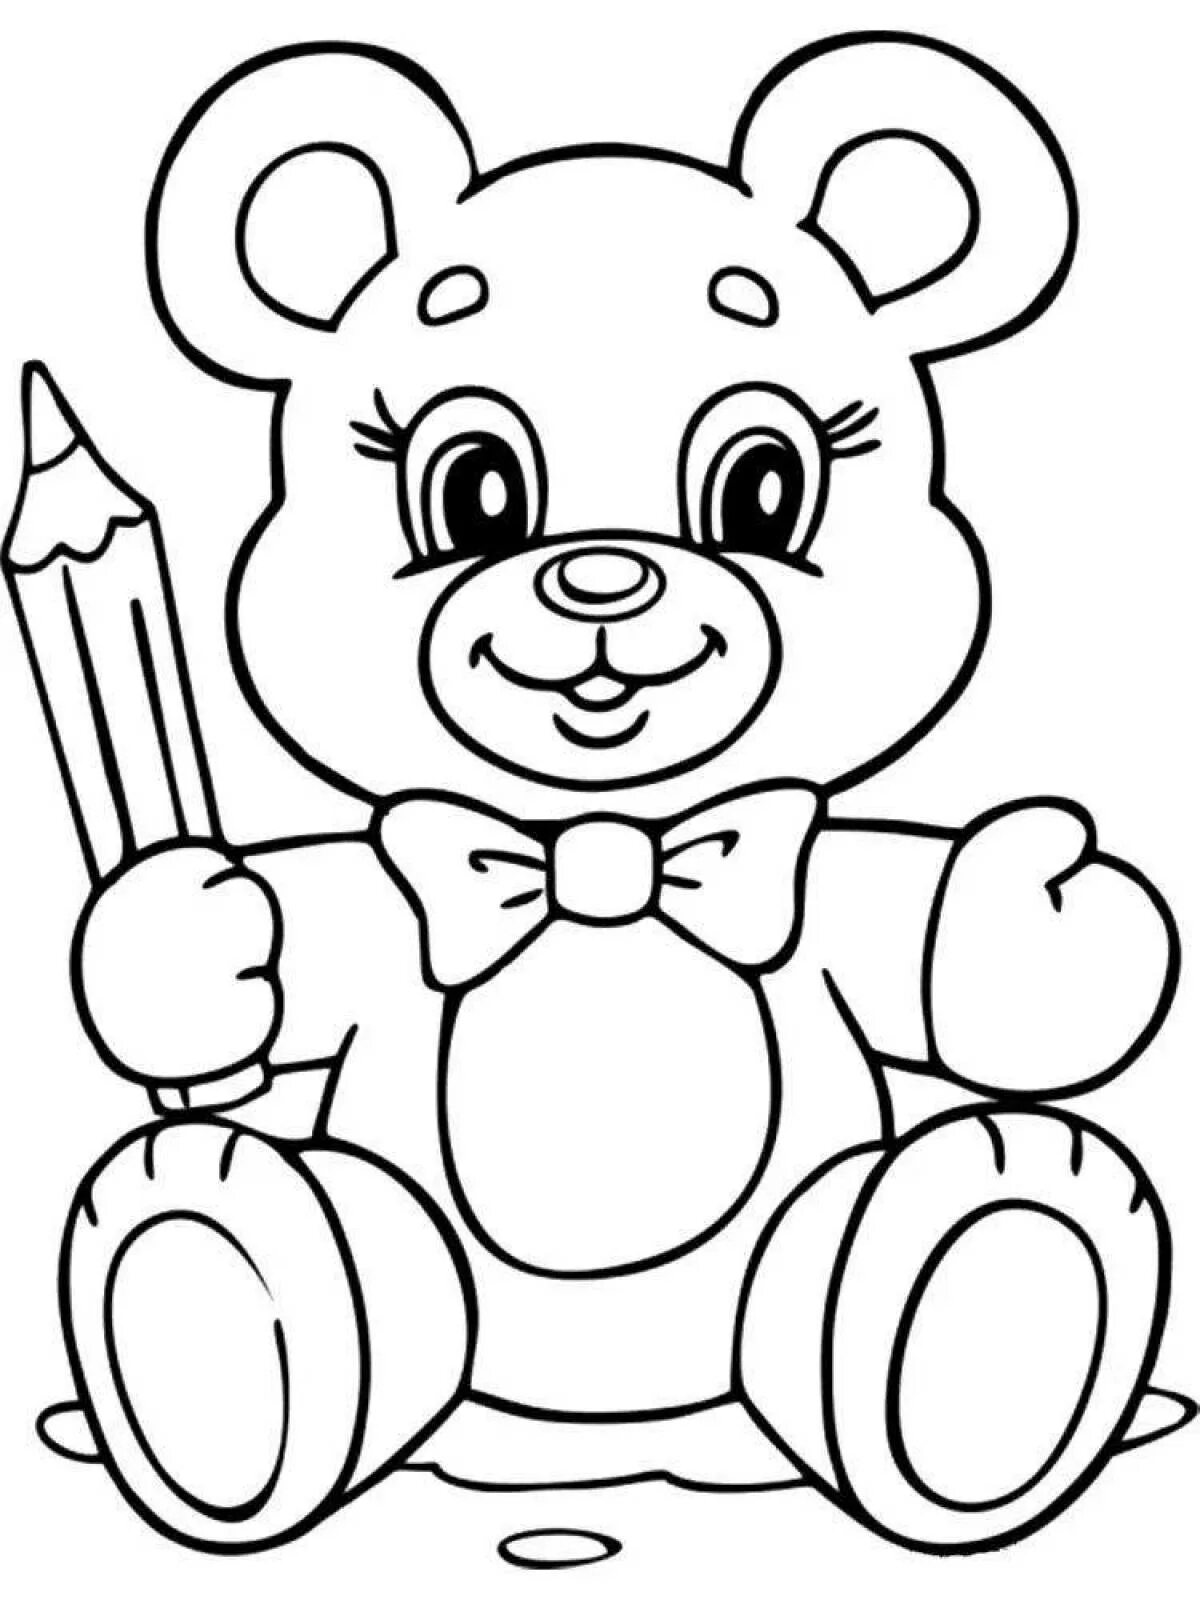 Медвежонок раскраска для детей. Раскраска для малышей. Игрушки. Раскраска "мишки". Мишка раскраска для малышей. Раскраски для детей 3 года мишки